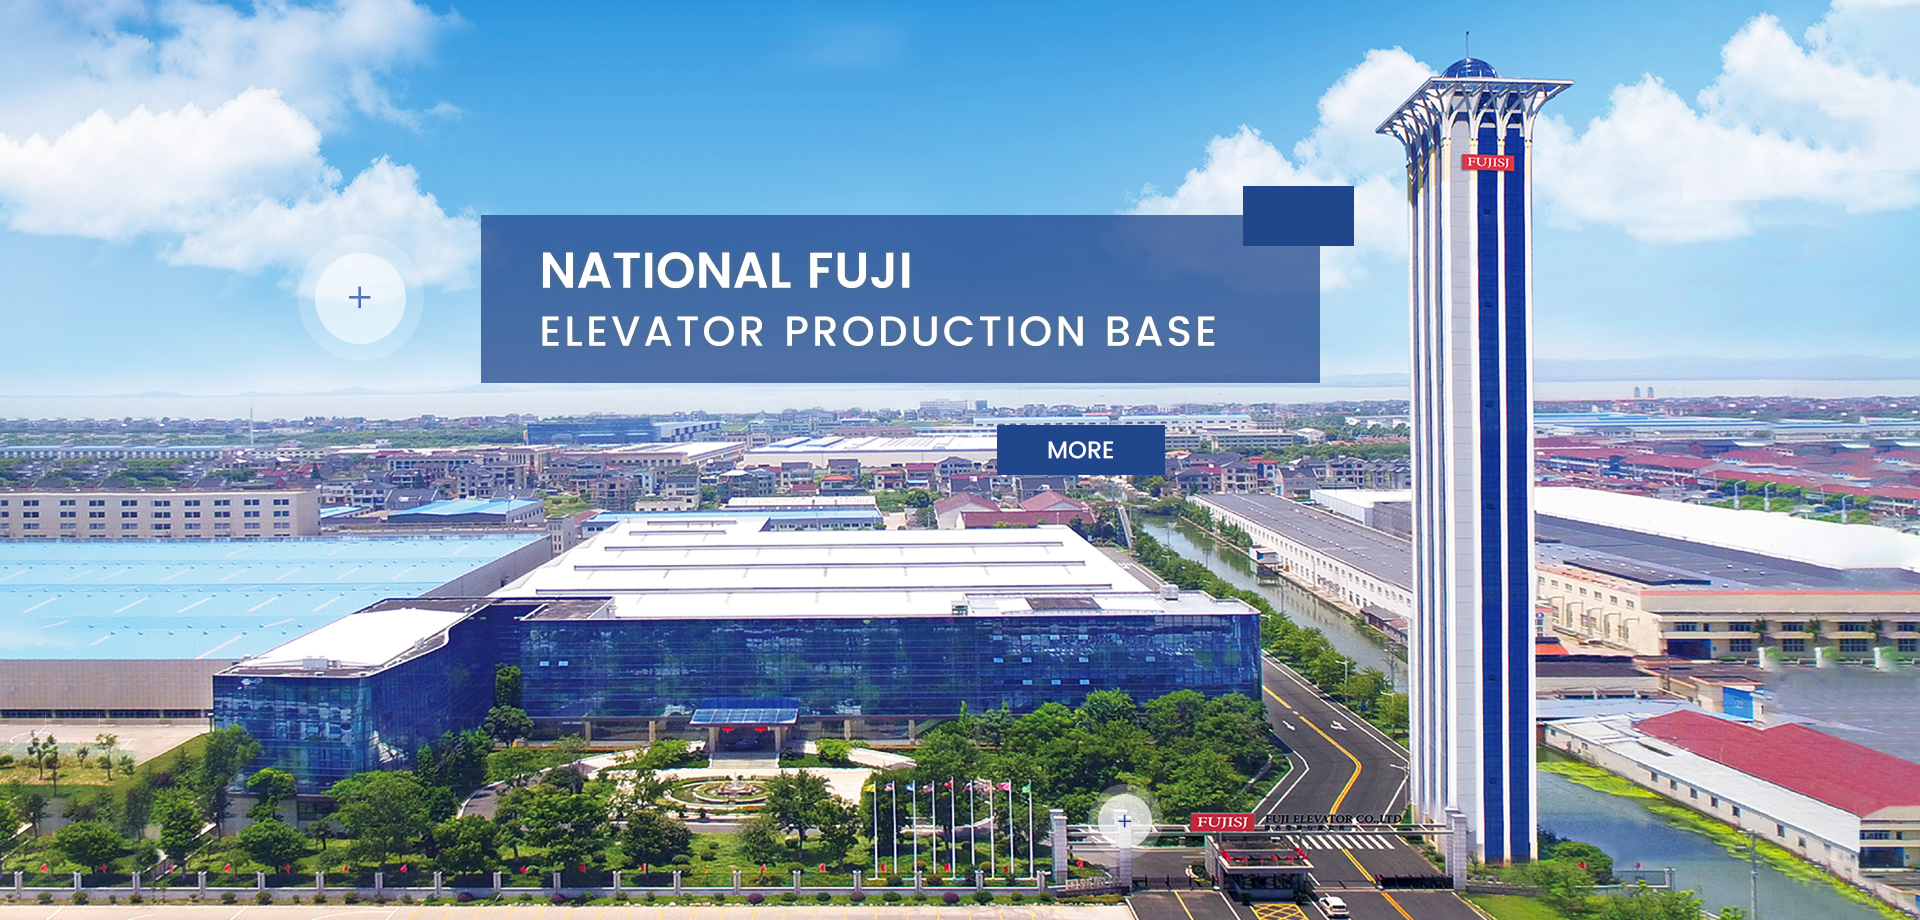 National Fuji Elevator Production Base